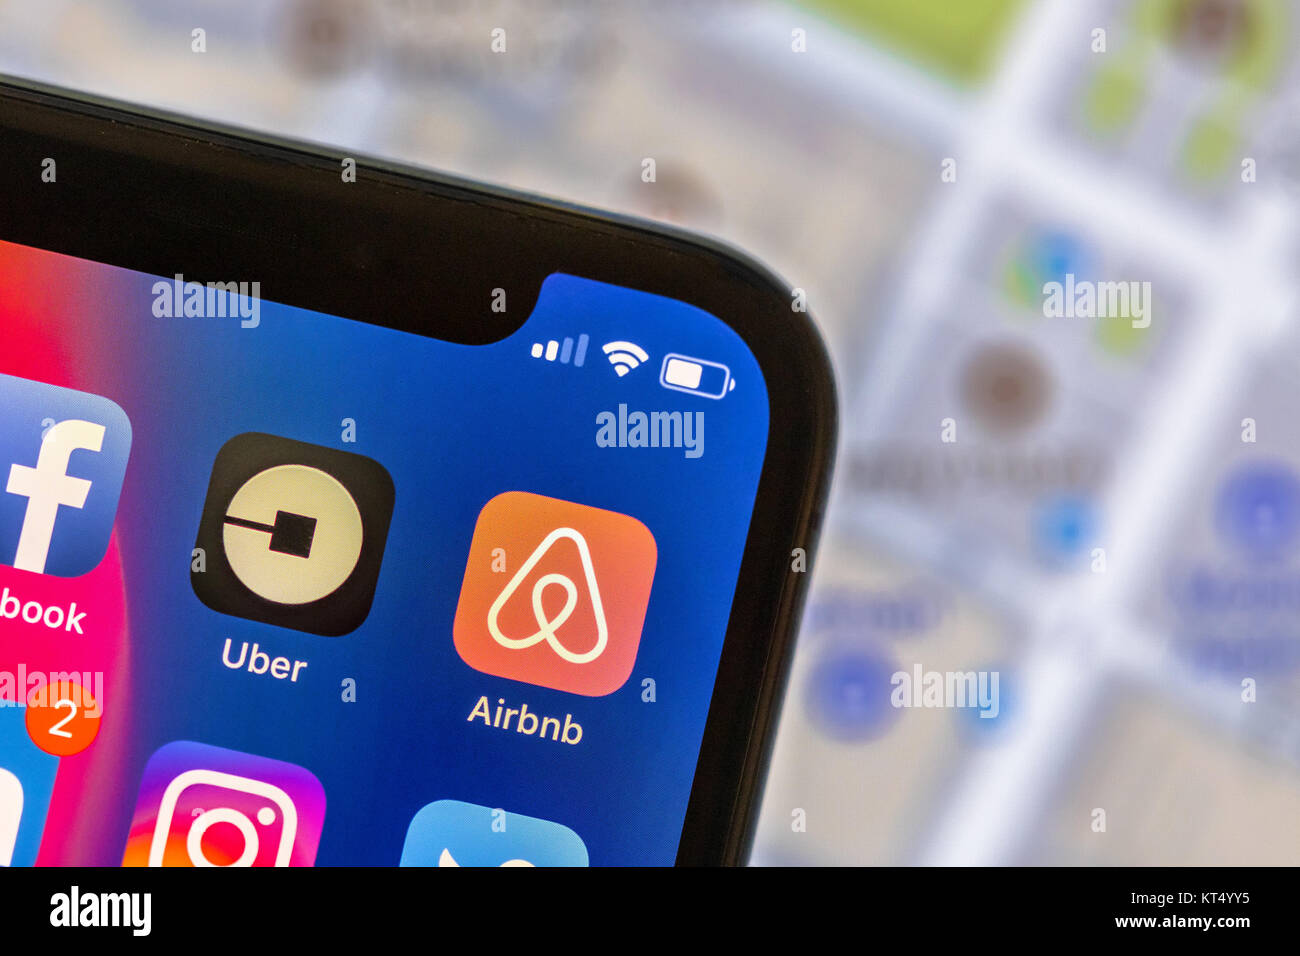 NEW YORK, Stati Uniti d'America - 8 Novembre 2017: Airbnb app logo sul telefono cellulare con cartina stradale in background. Airbnb è un marketplace online ad offrire alle persone un Foto Stock